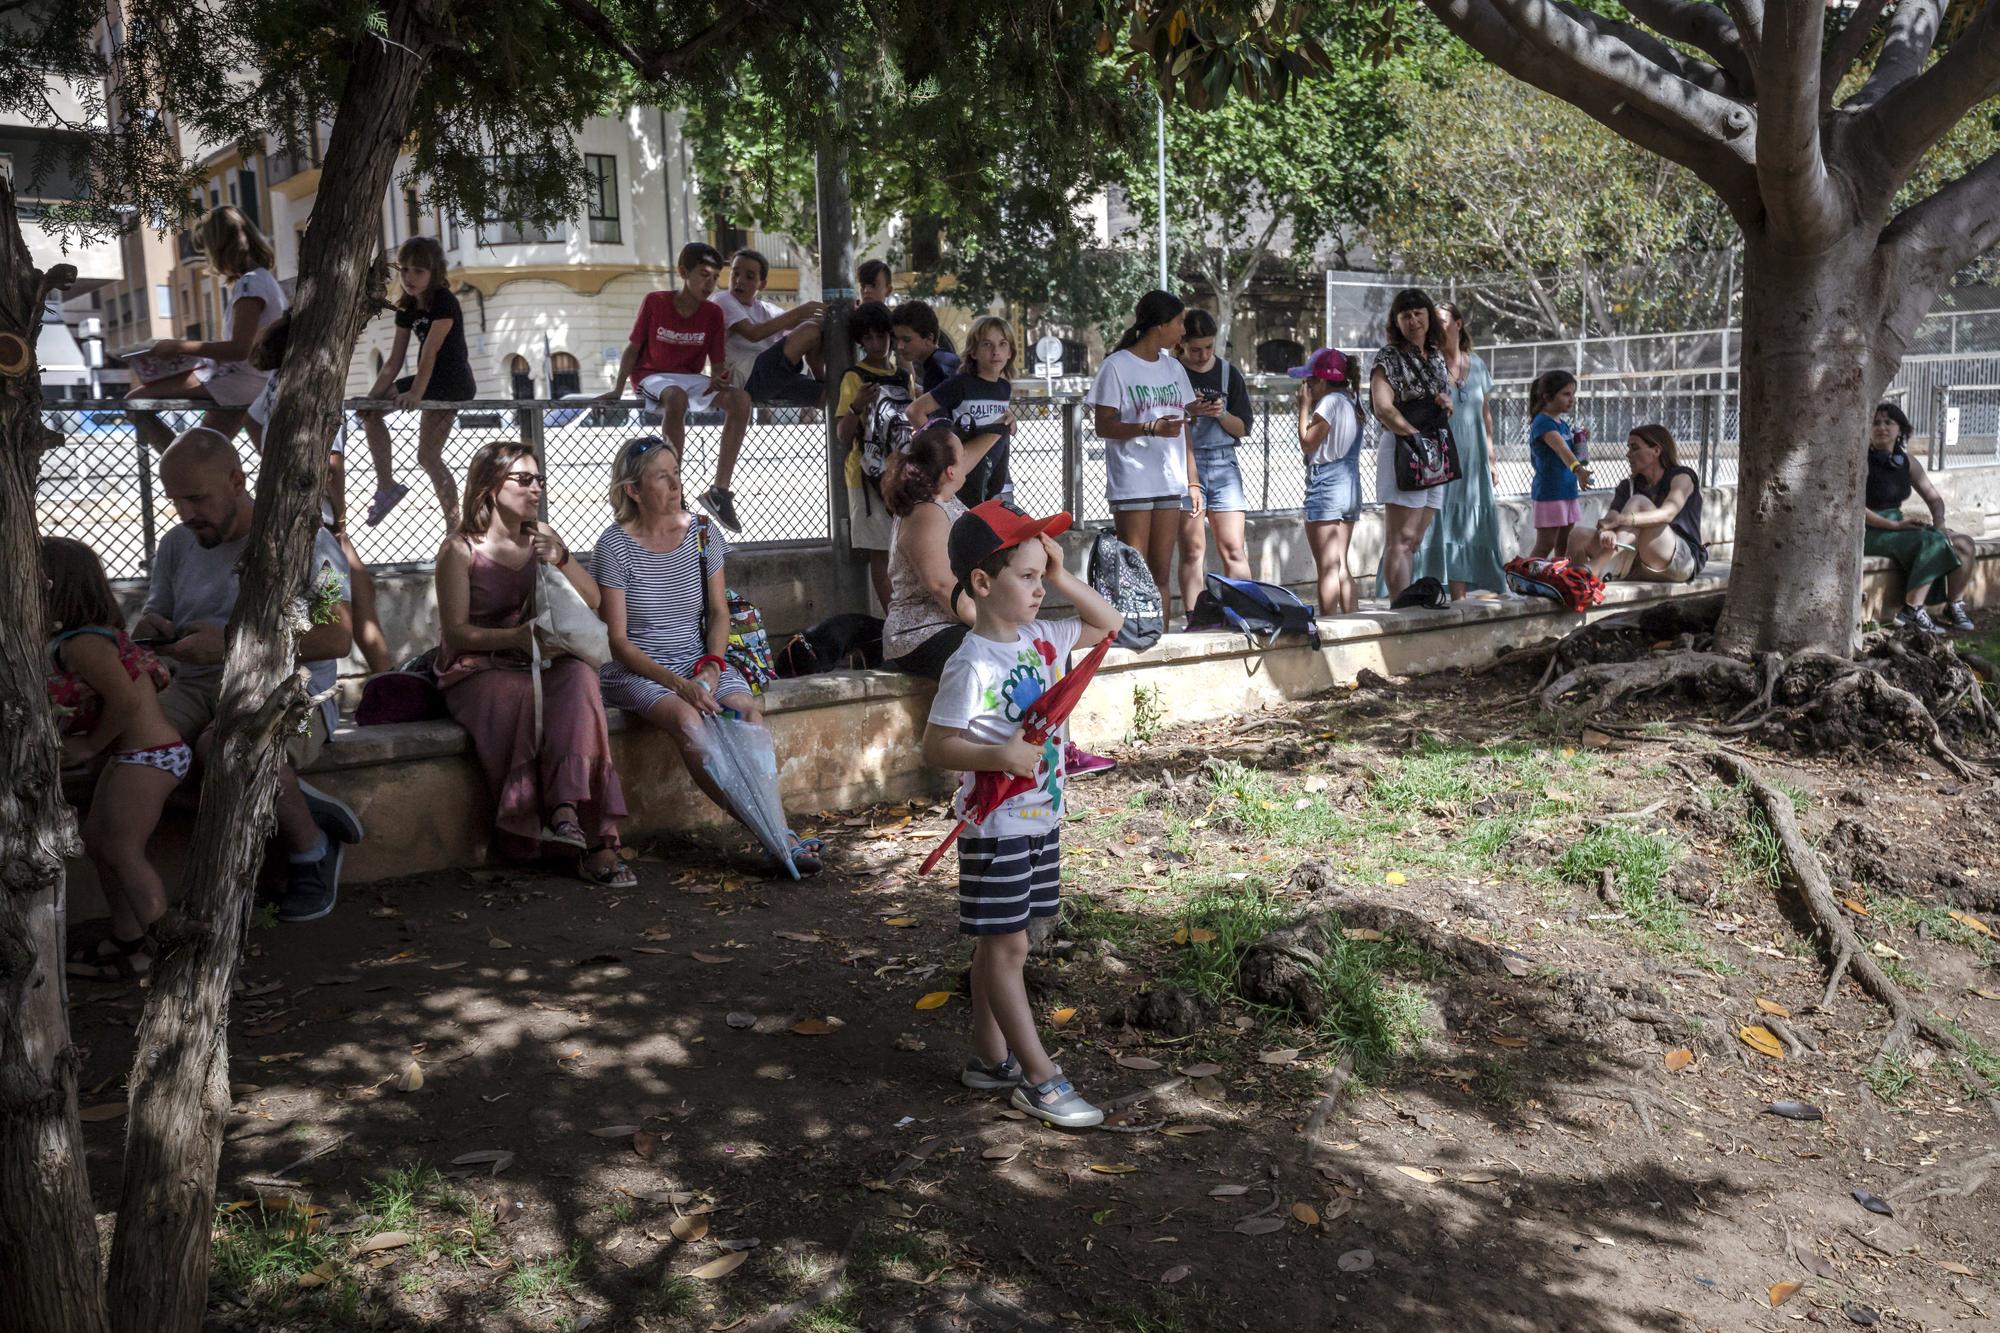 Vecinos de Plaza Patines protestan para exigir sombras en el parque